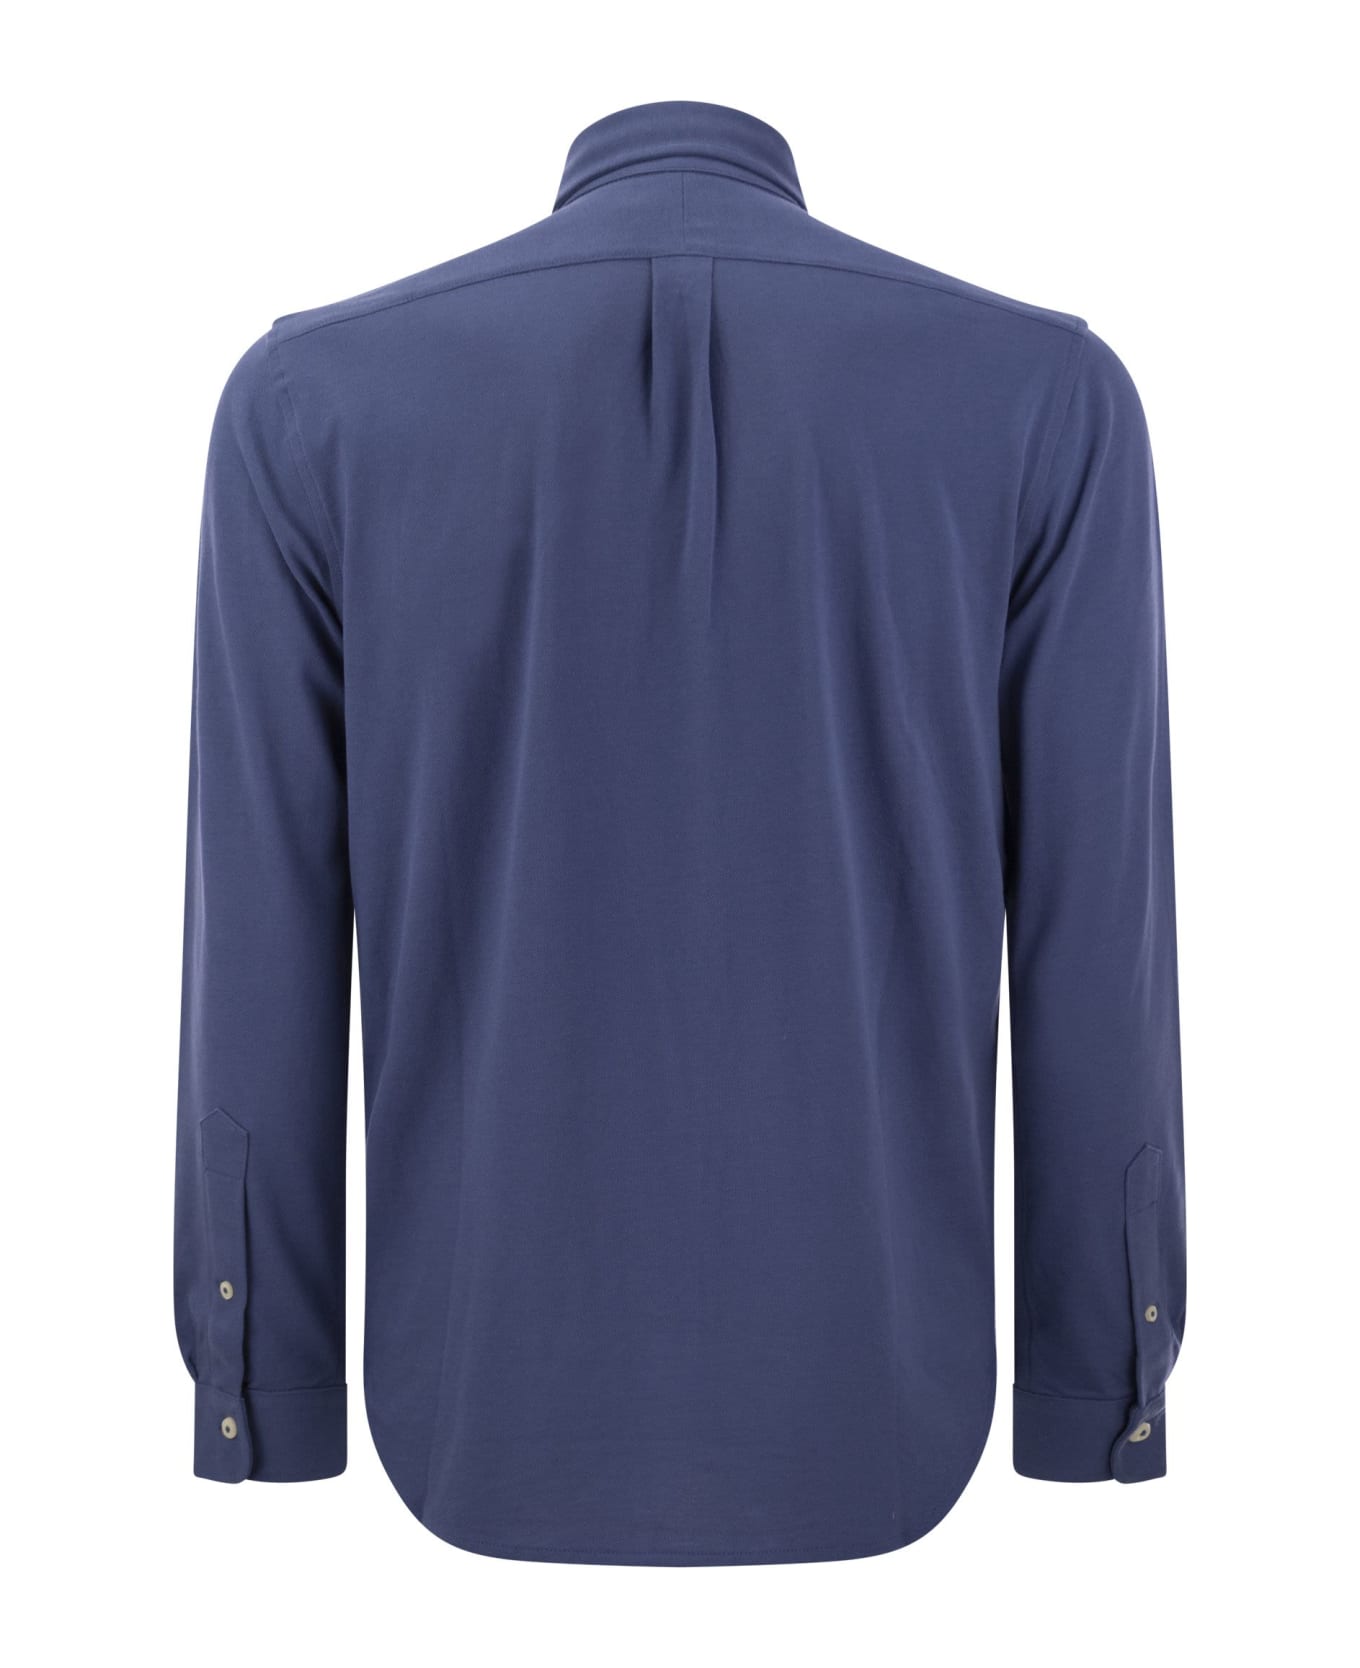 Polo Ralph Lauren Long Sleeve Sport Shirt Shirt - Avio